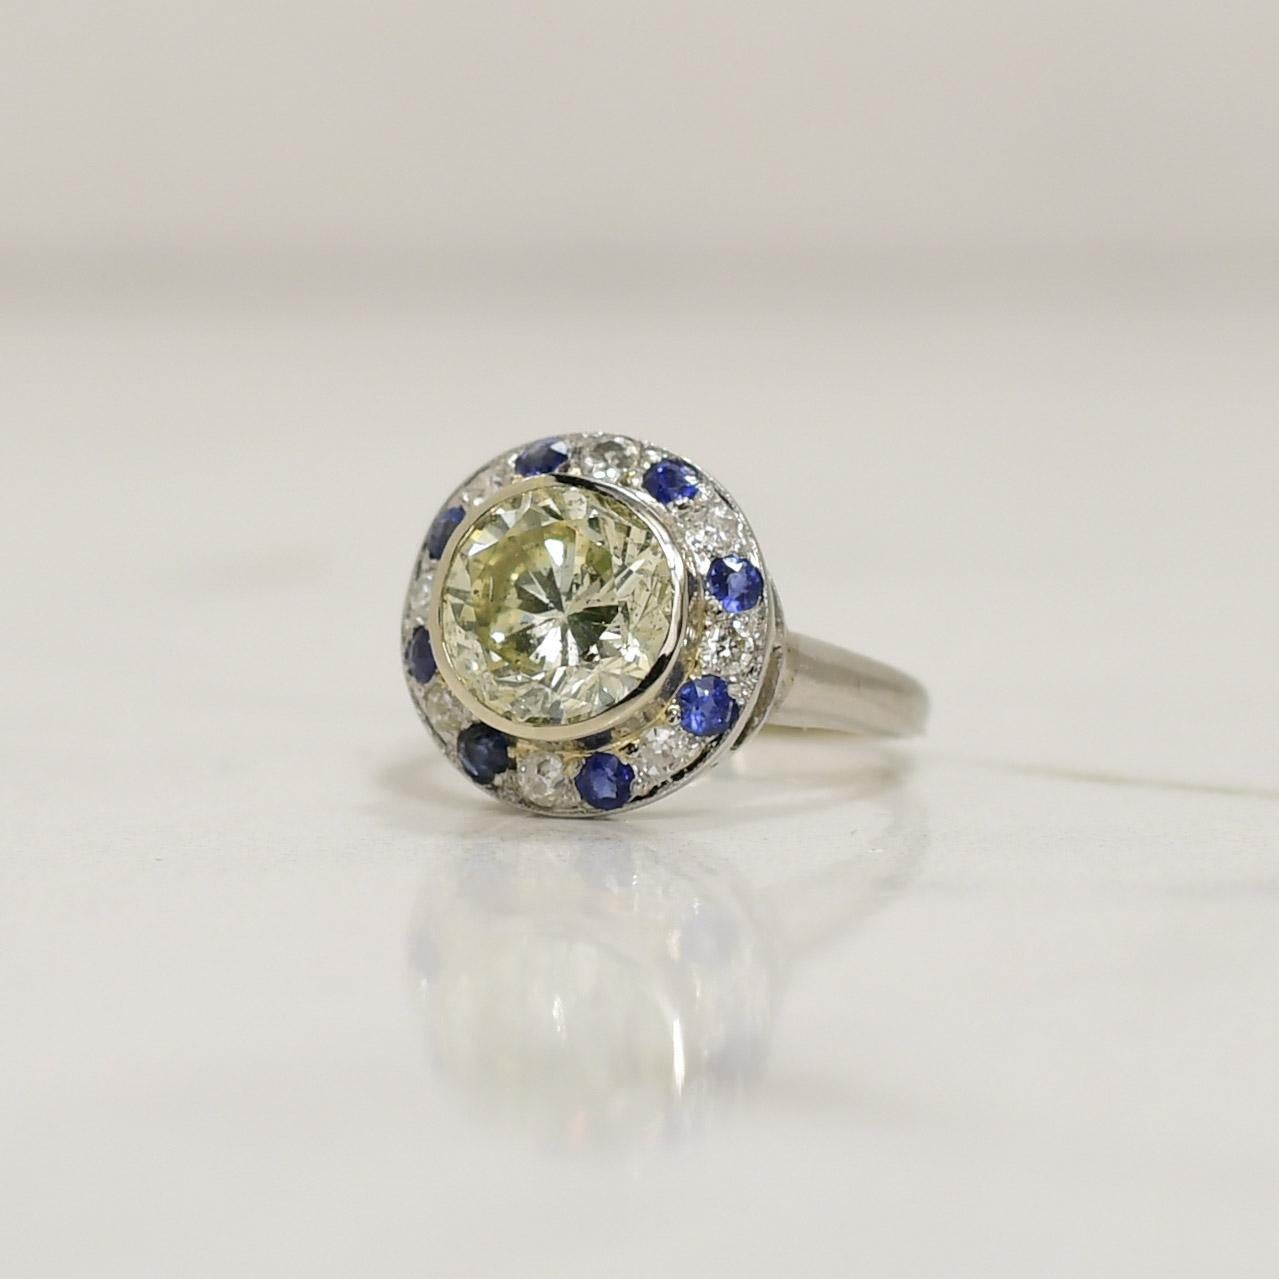 Der elegante, kugelförmige Vintage Ring aus Palladium präsentiert eine atemberaubende Kombination aus 2,44 Karat schillernden Diamanten und reichen Saphiren, die einen zeitlosen Reiz ausüben. Das exquisite Design, das an eine Himmelskugel erinnert,